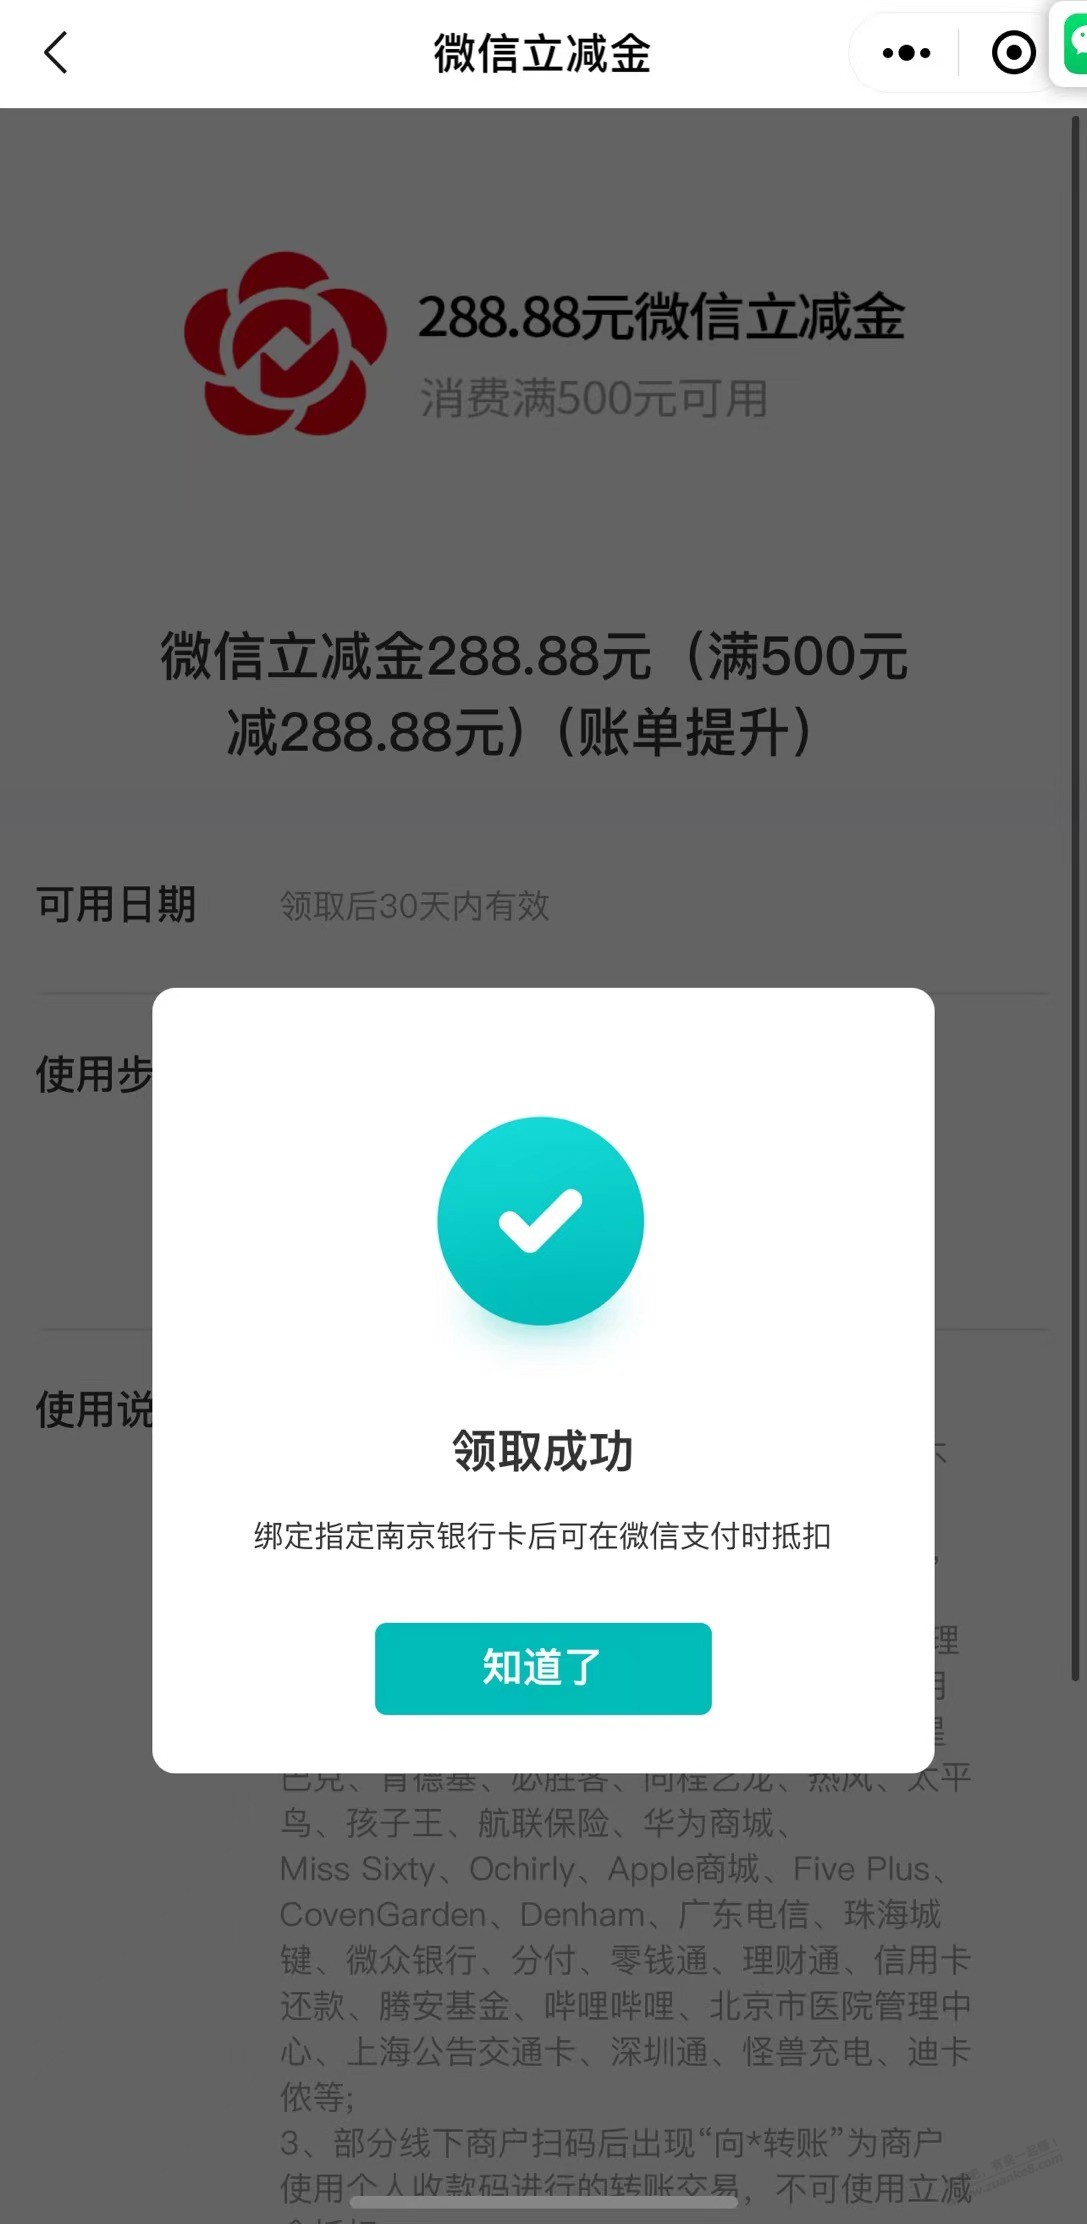 南京银行XYK账单提升-奖品到账了-惠小助(52huixz.com)